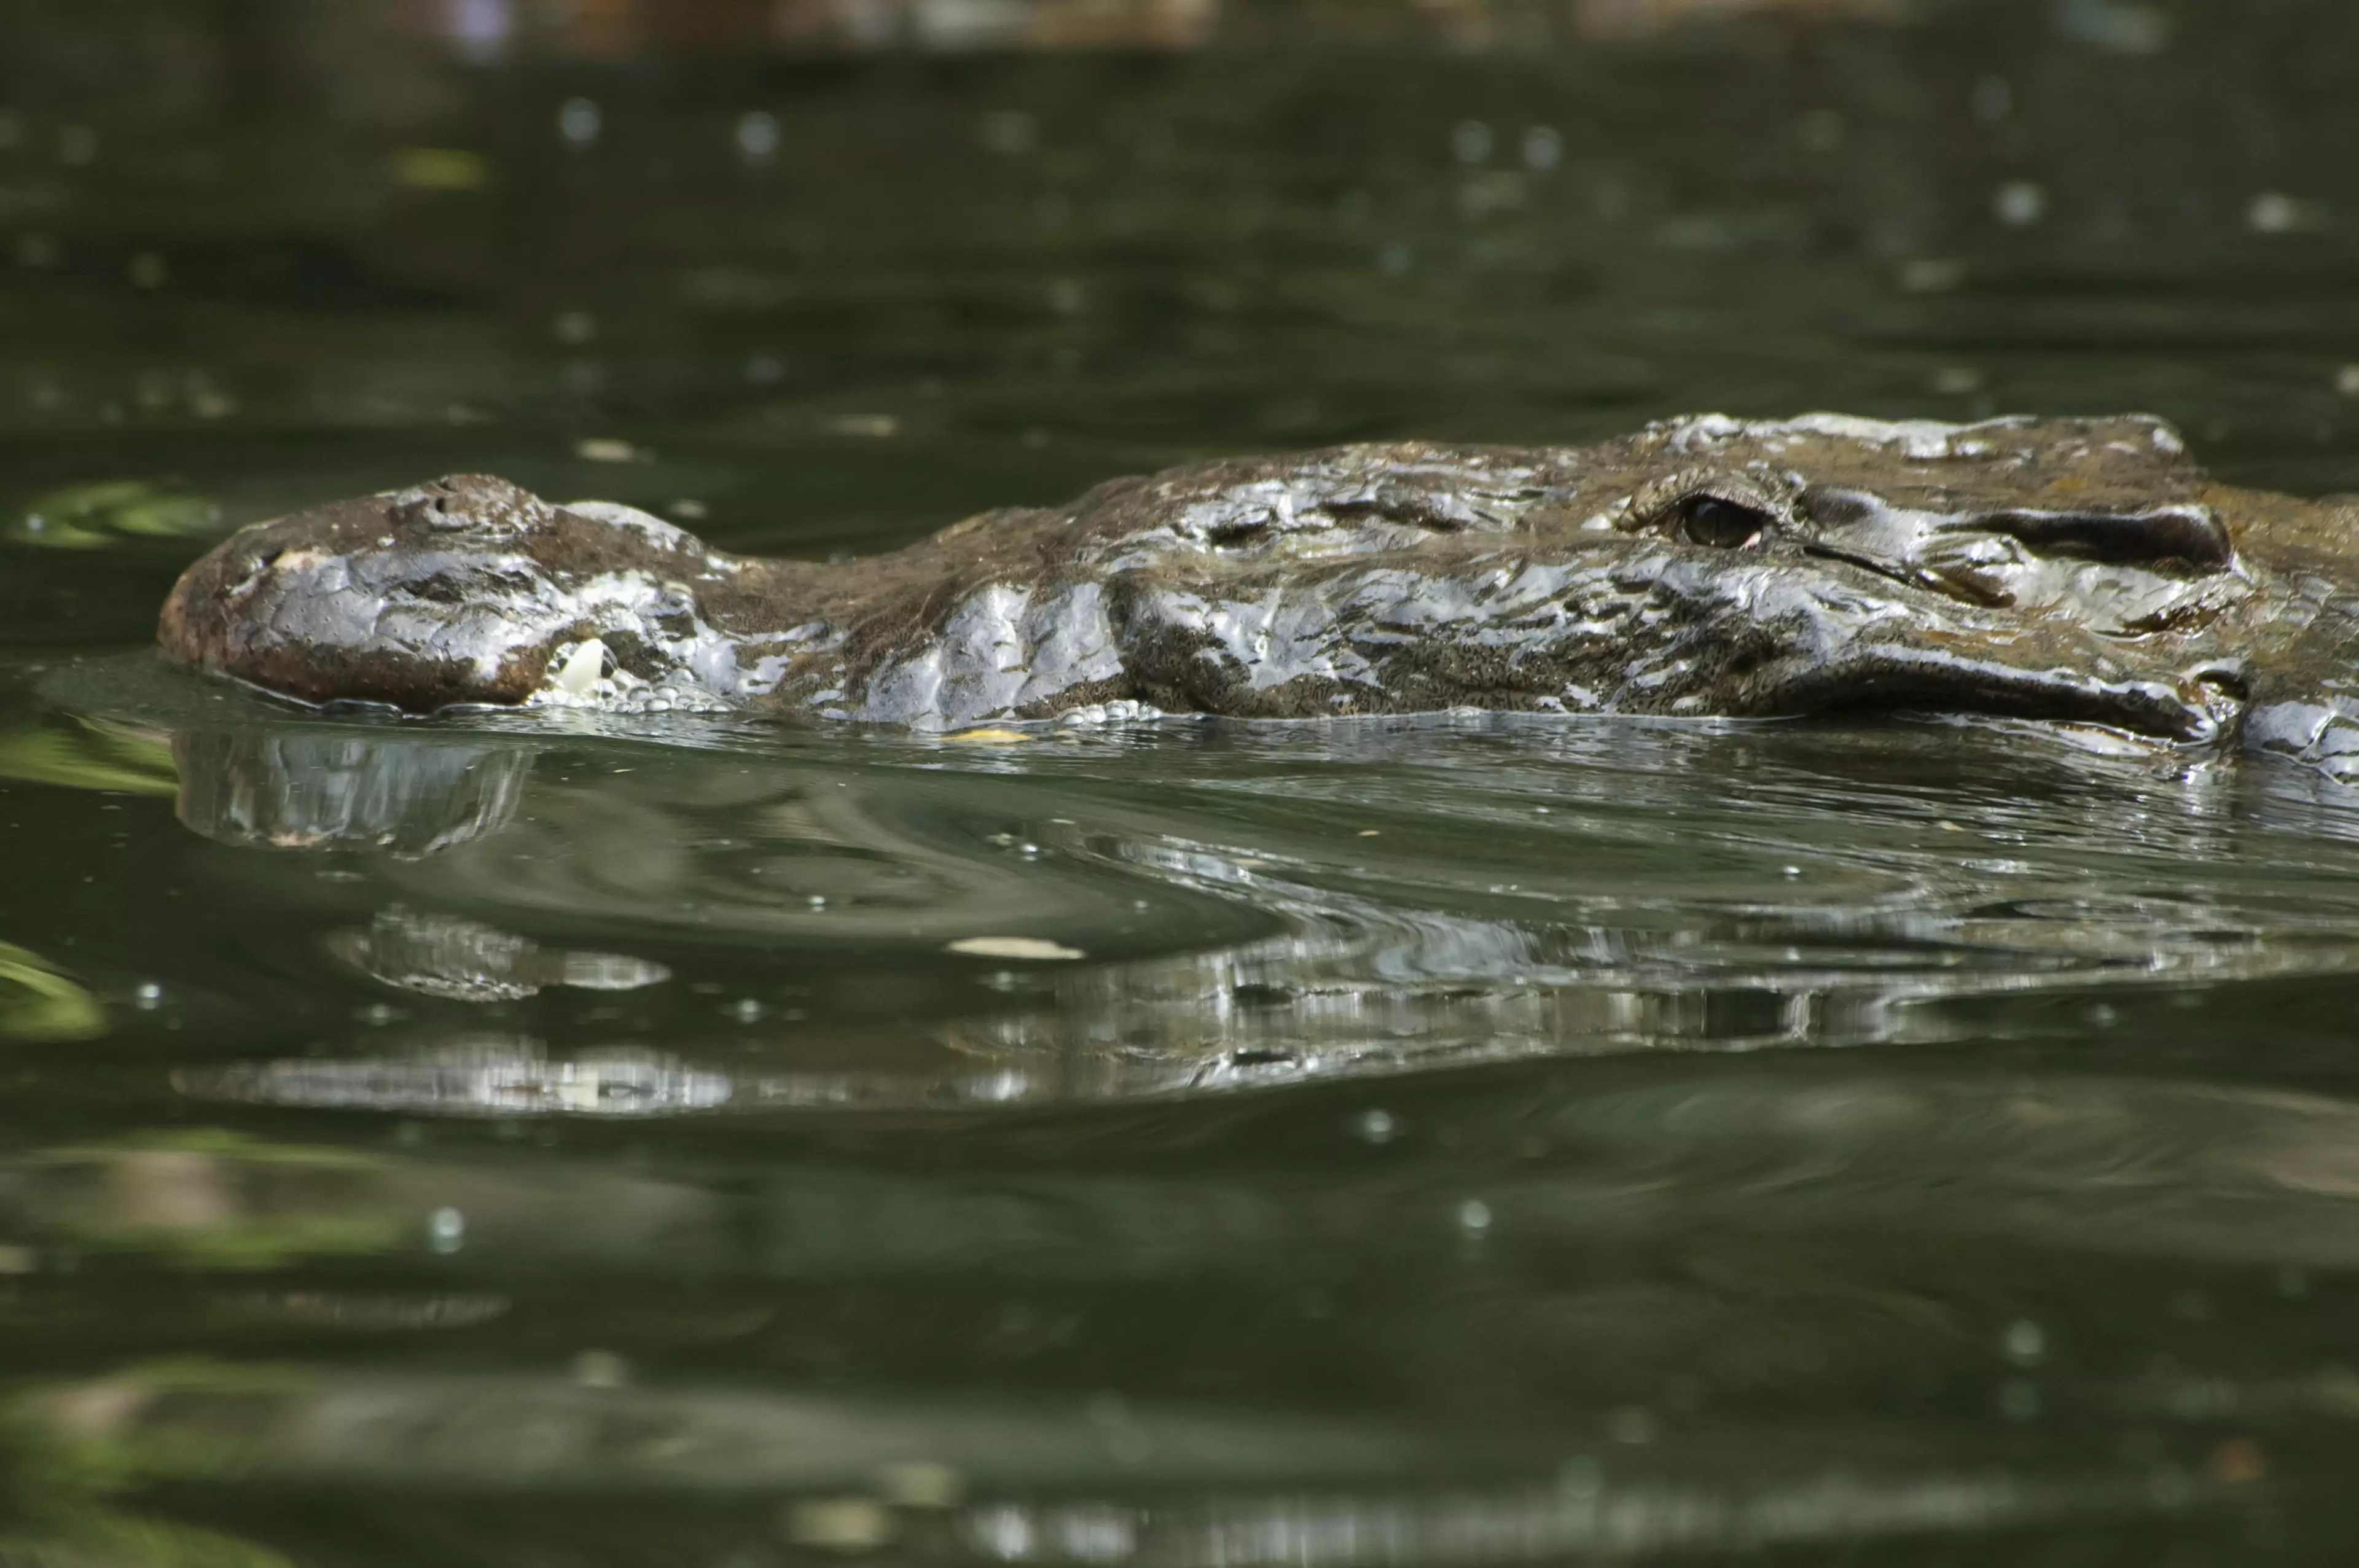 A river crocodile in Mexico.